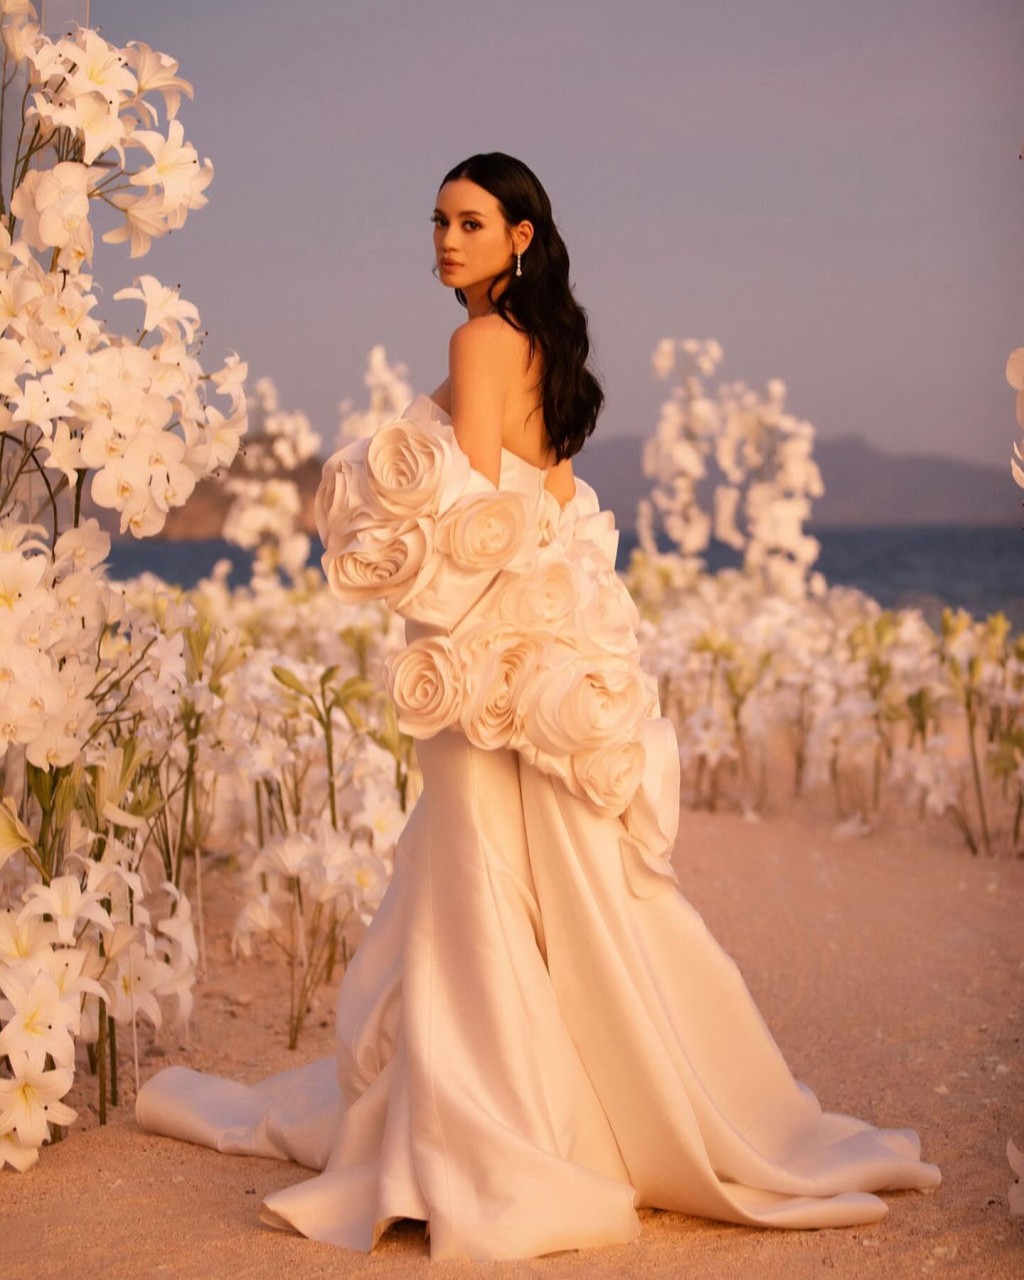 林恬儿穿上的婚纱来自台湾品牌Nicole + Felicia。